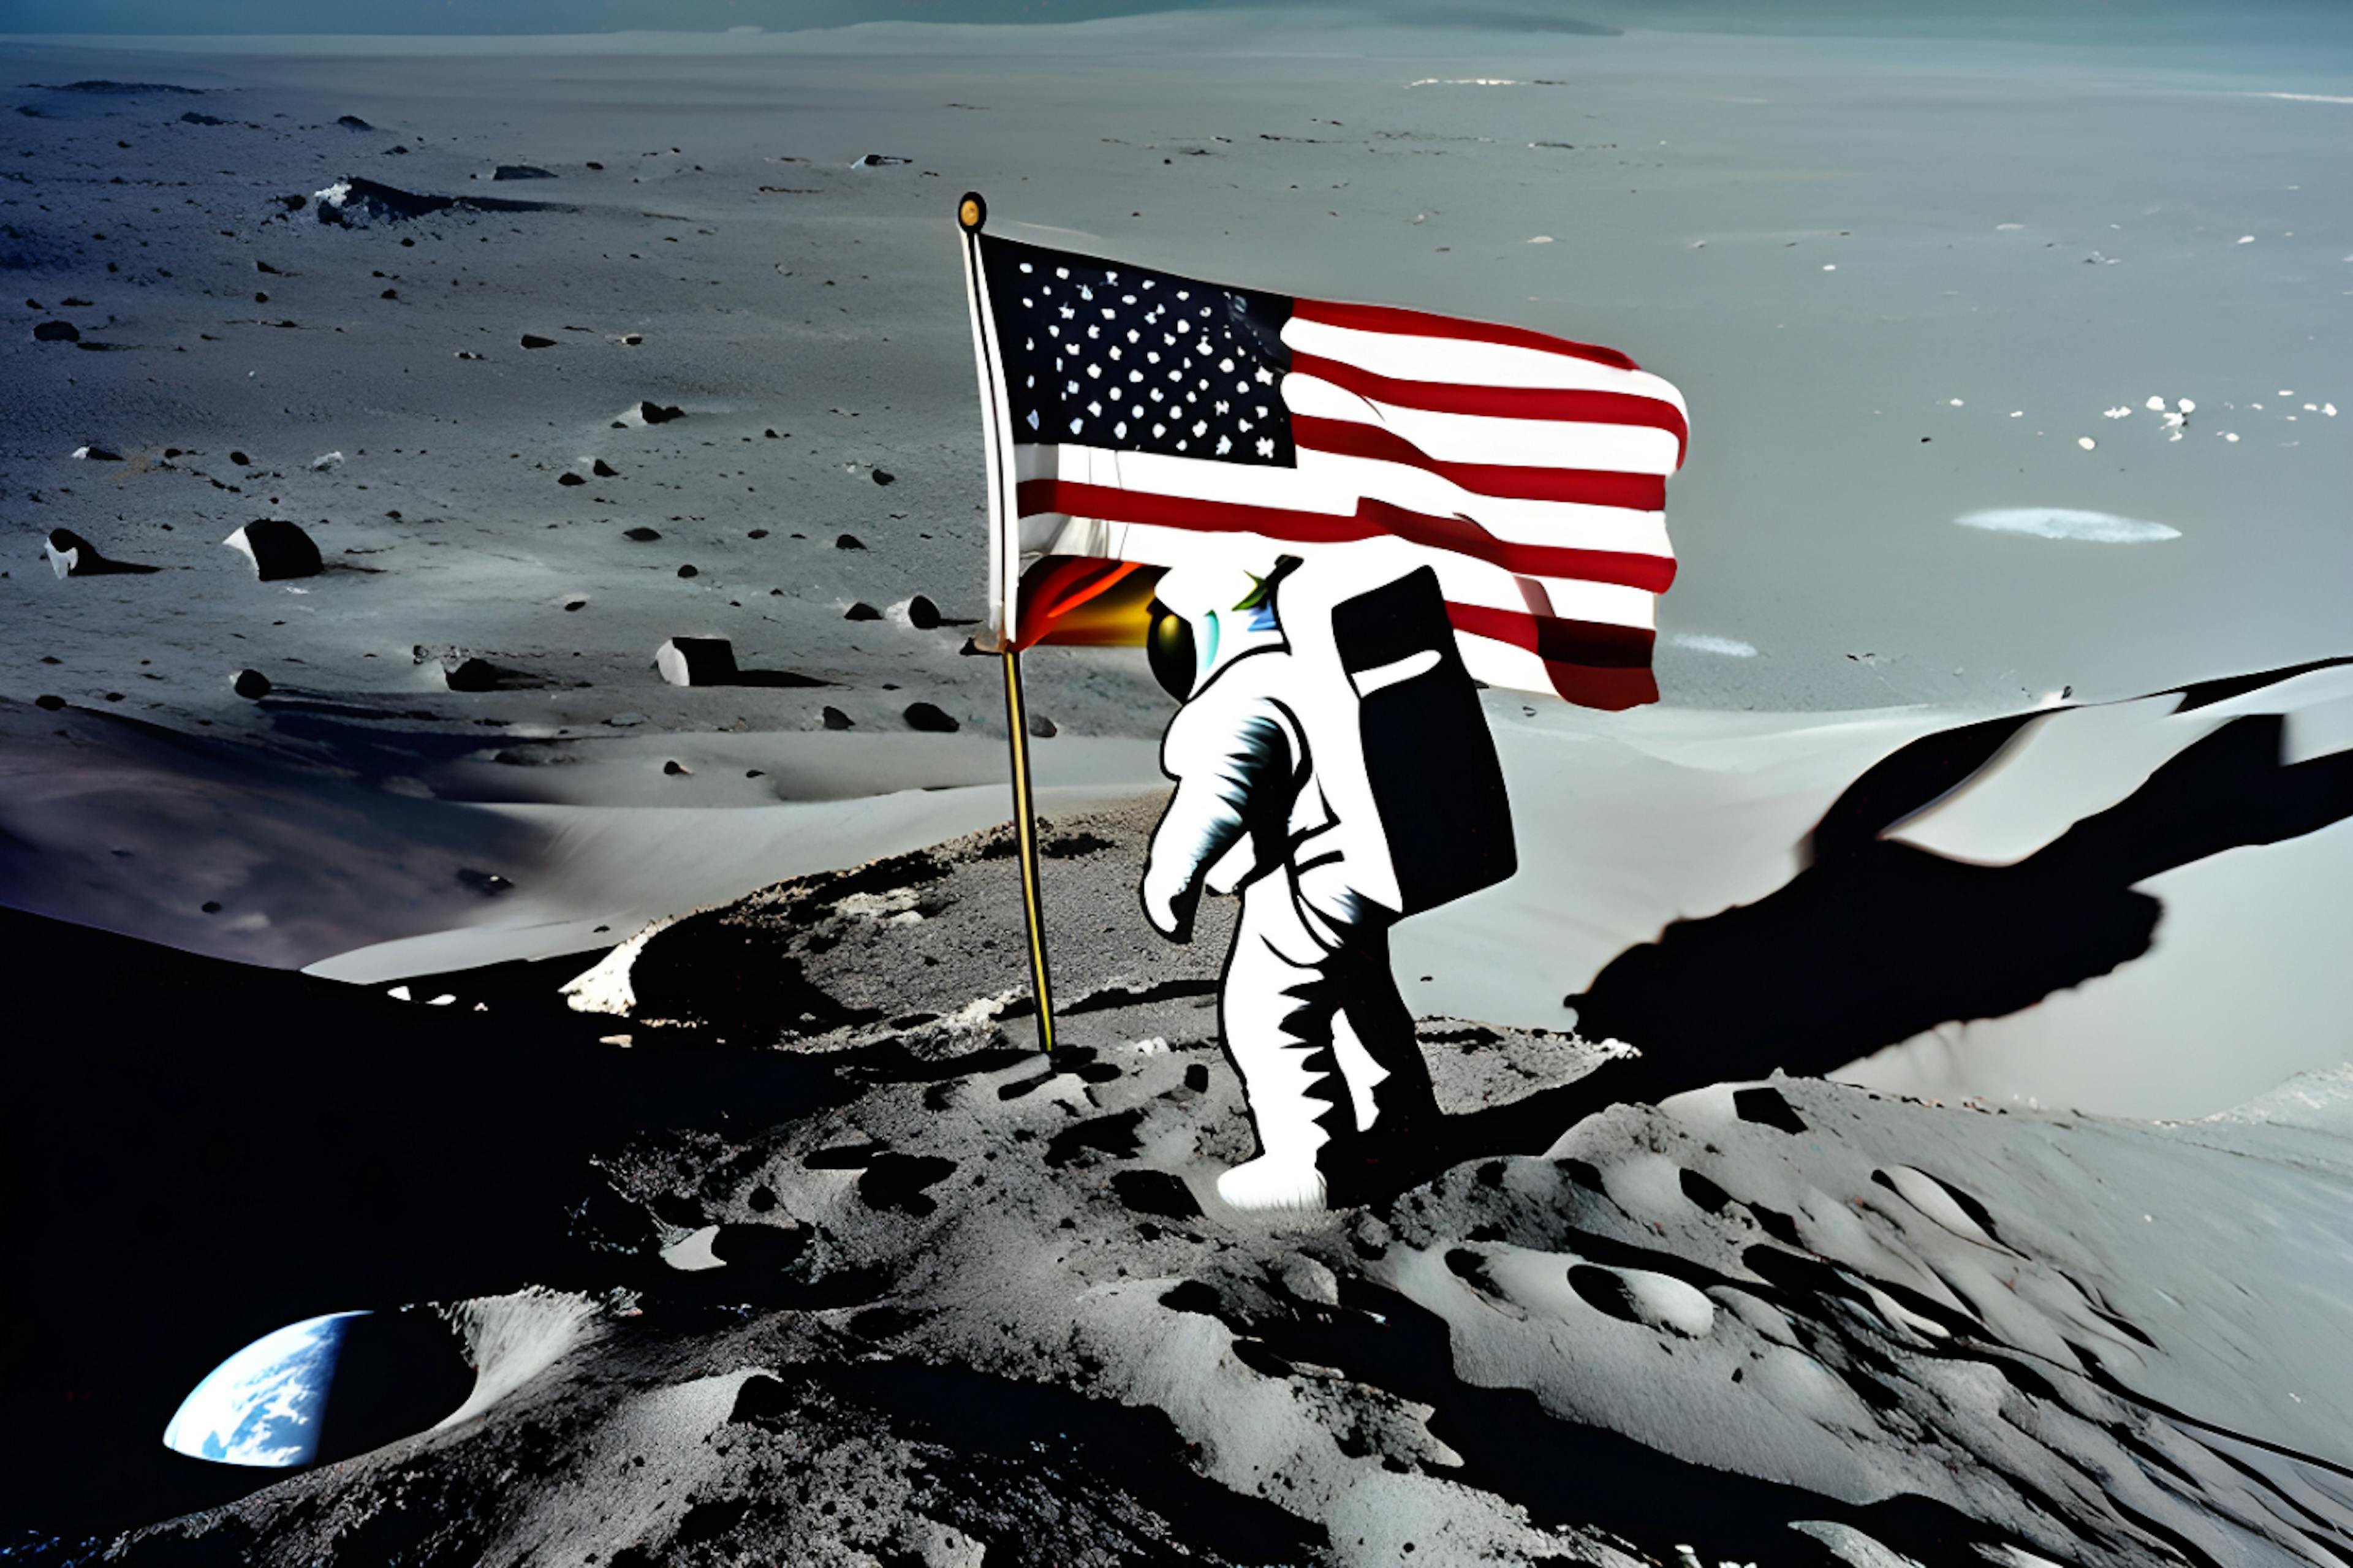 featured image - Gouvernance spatiale : les États-Unis ouvrent la voie à une exploration cislunaire responsable et durable